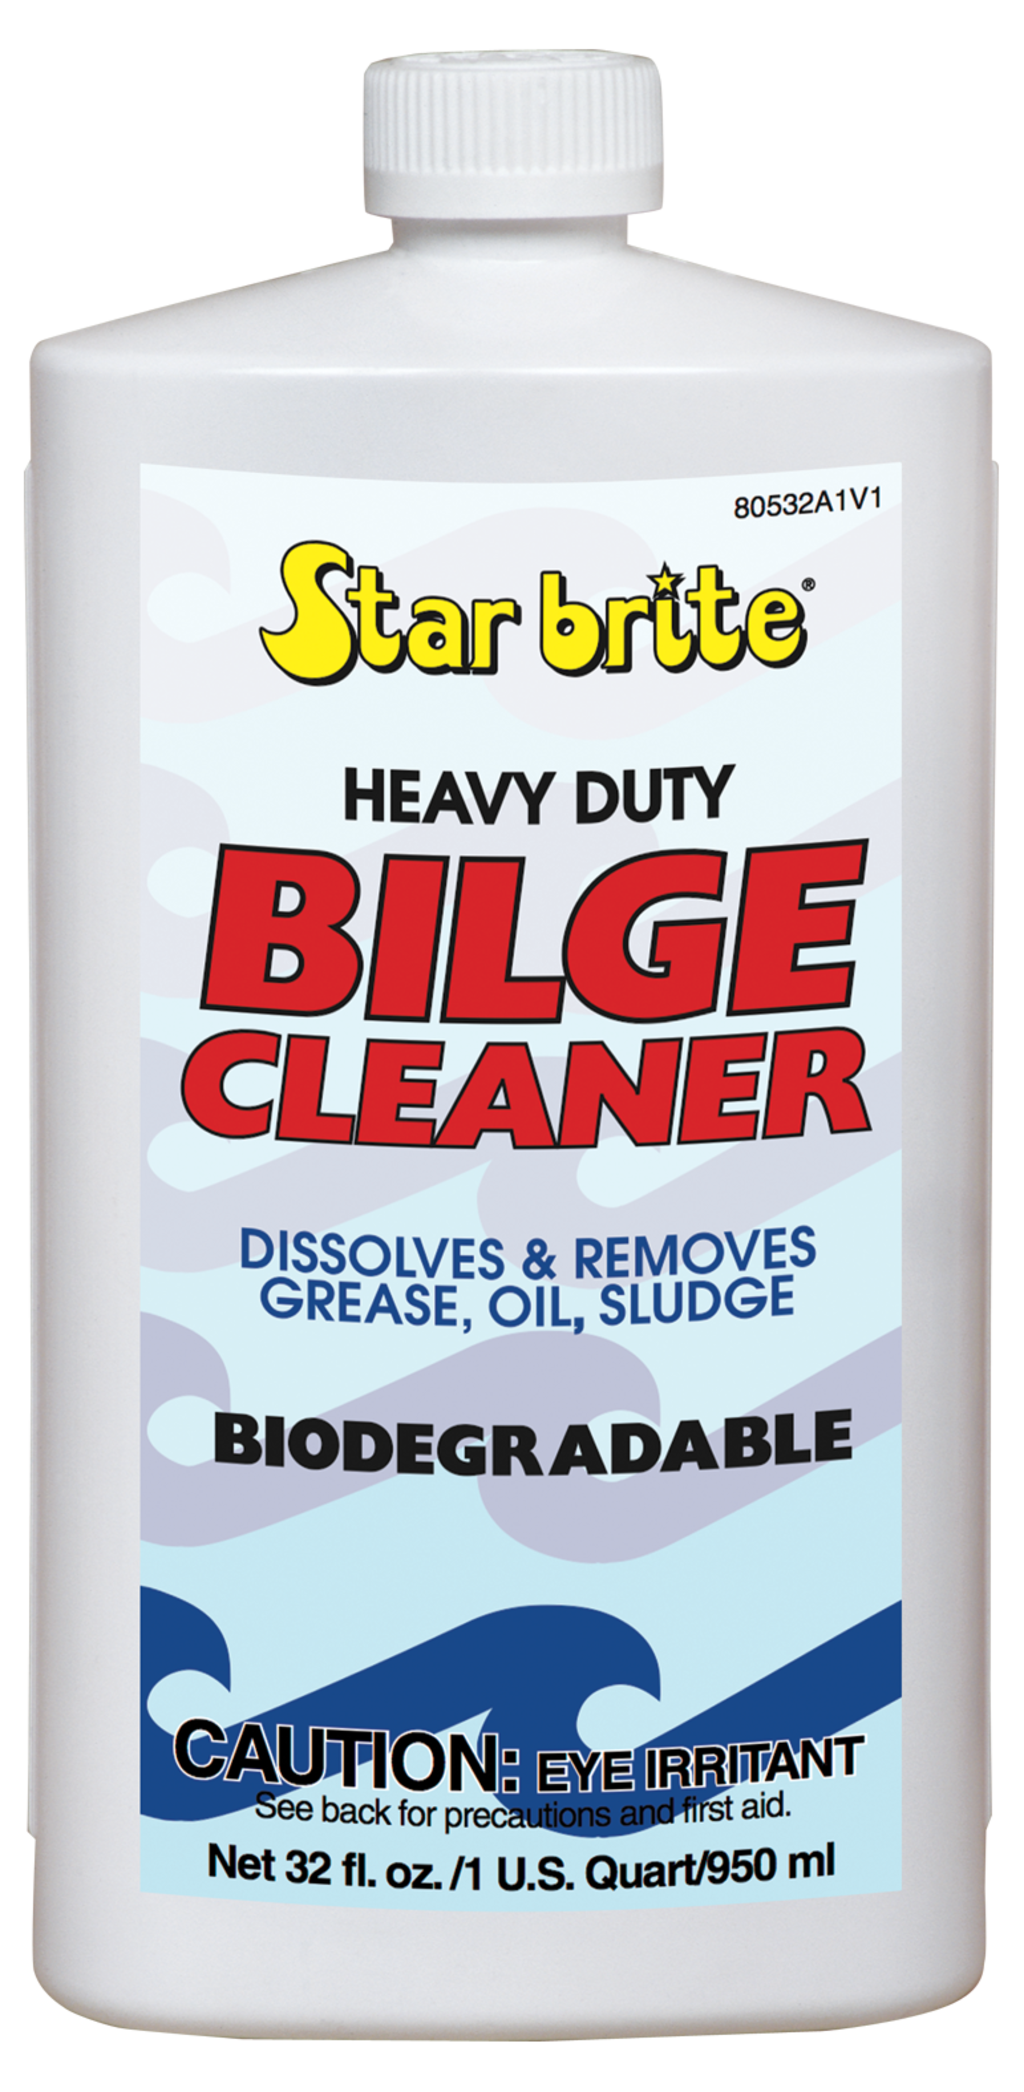 Starbrite Bilge Cleaner